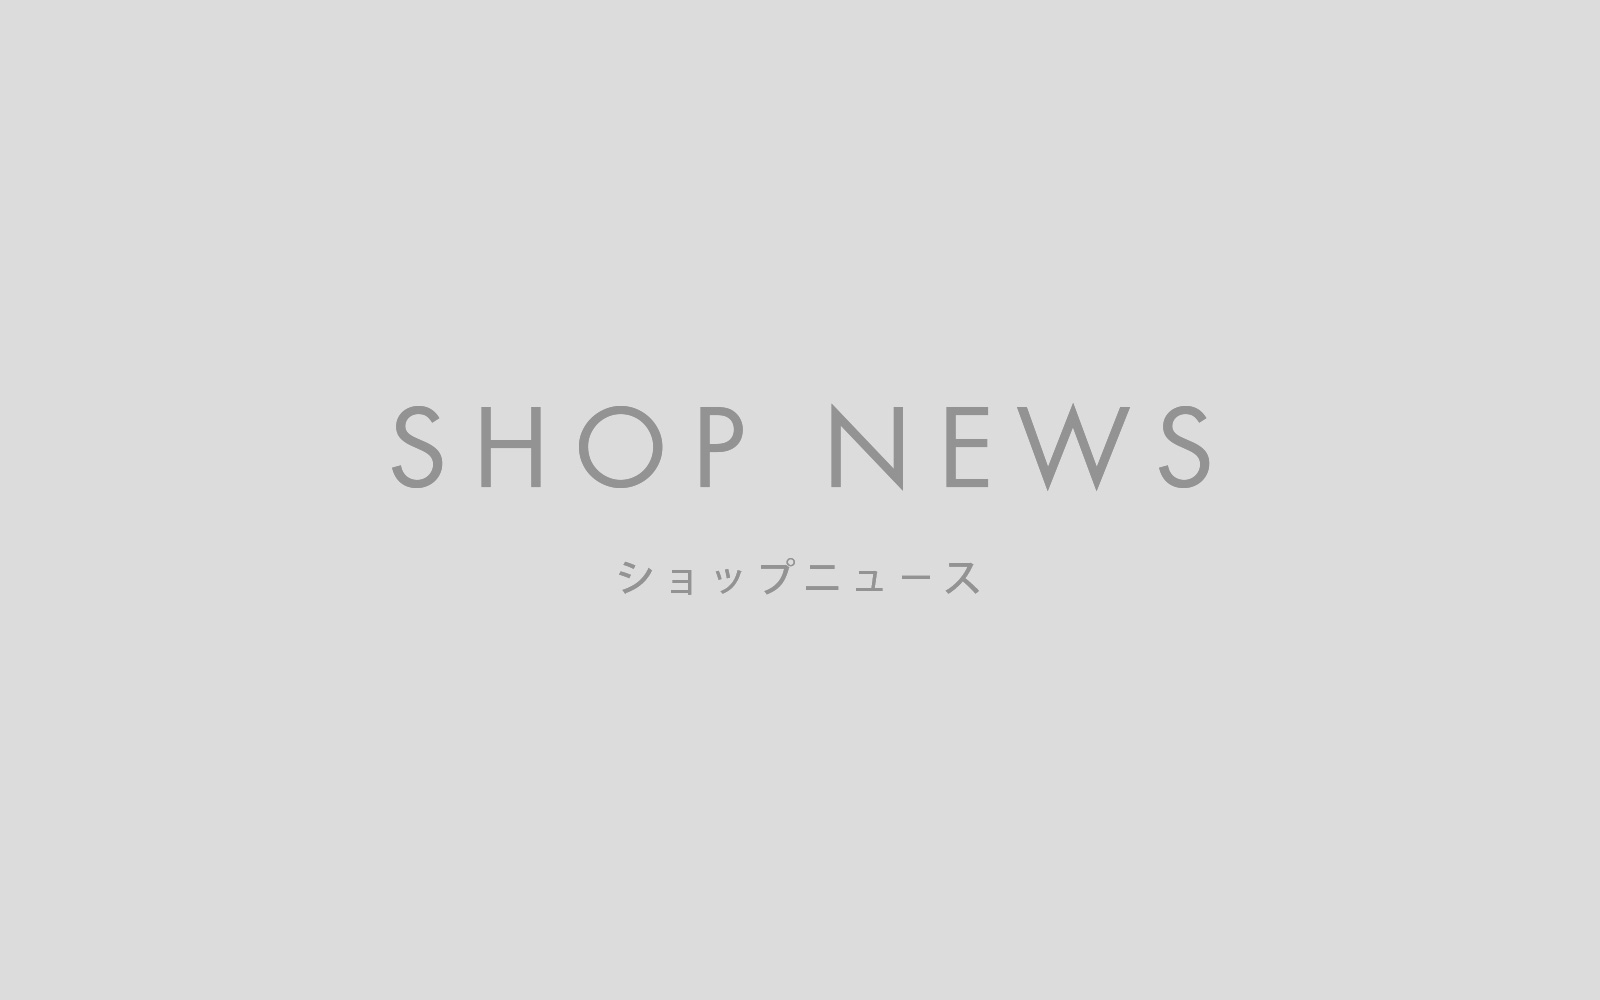 【SHOP NEWS】2022年 GW休業のお知らせ